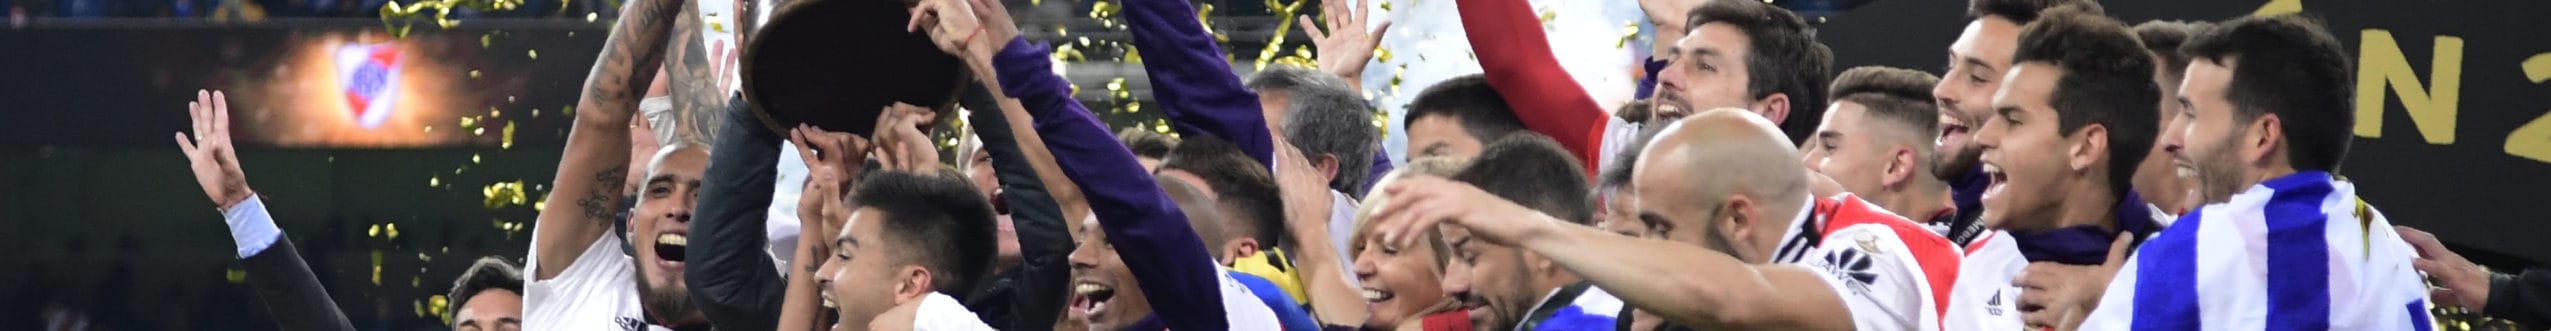 Ρίβερ Πλέιτ - Φλαμένγκο: Το απόλυτο κουίζ για το Copa Libertadores!